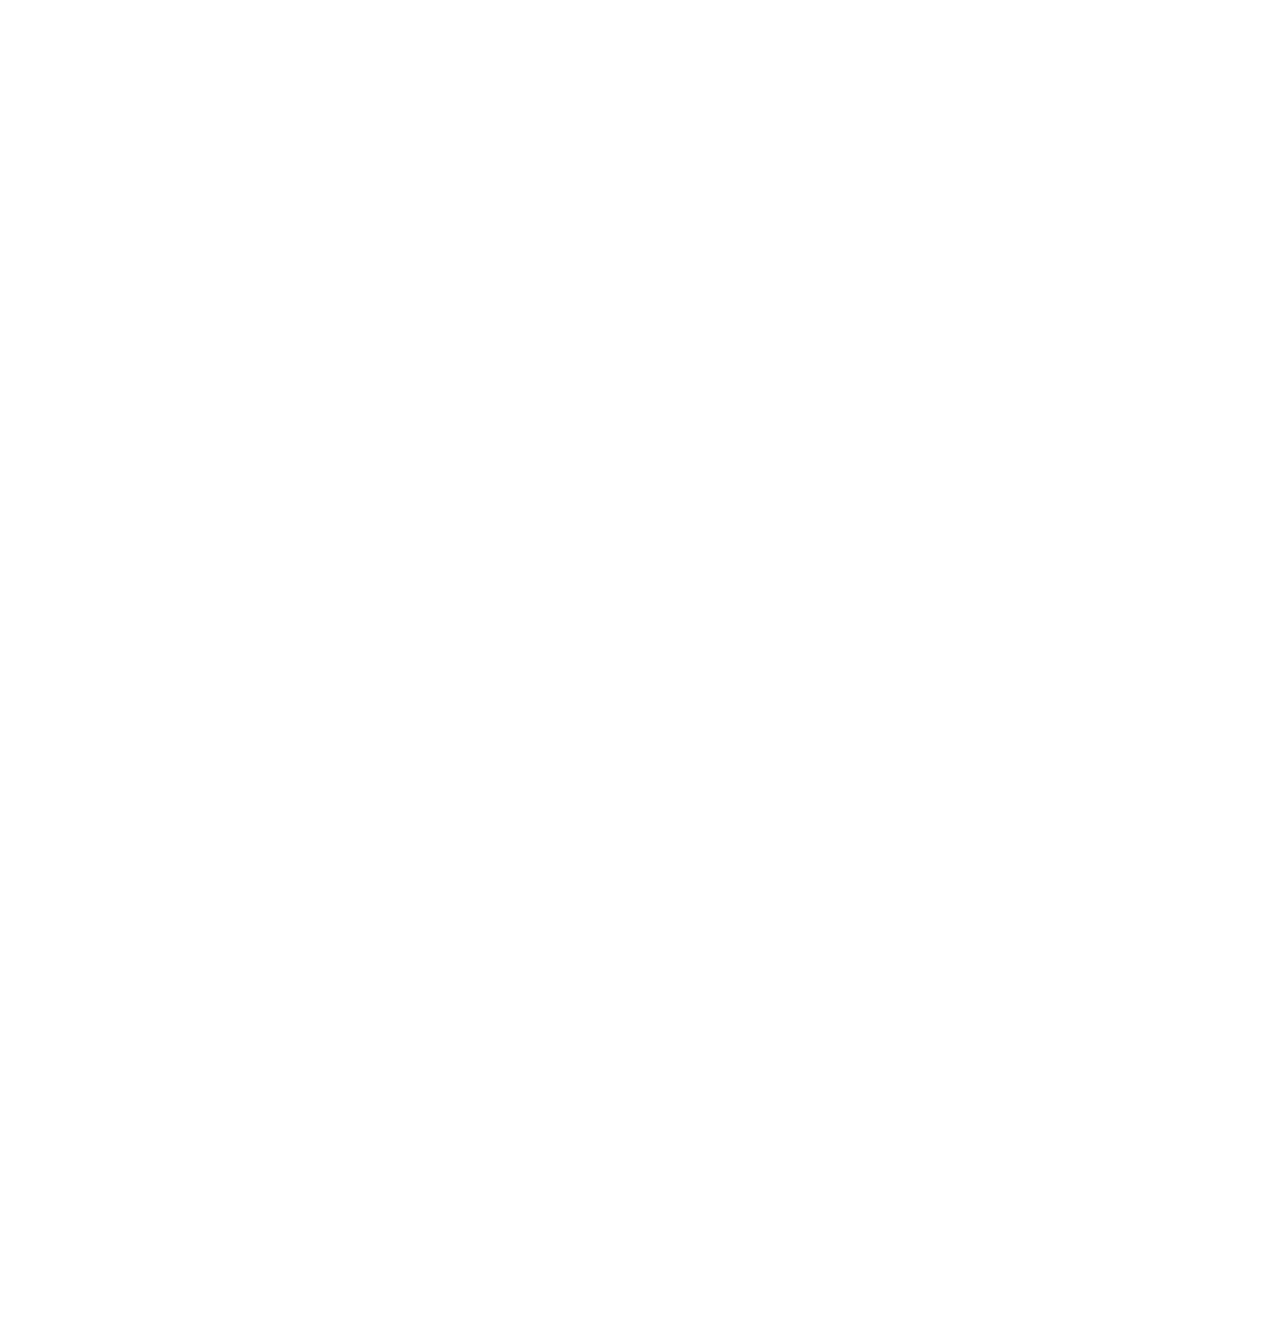 Tube Enlightenment's logo